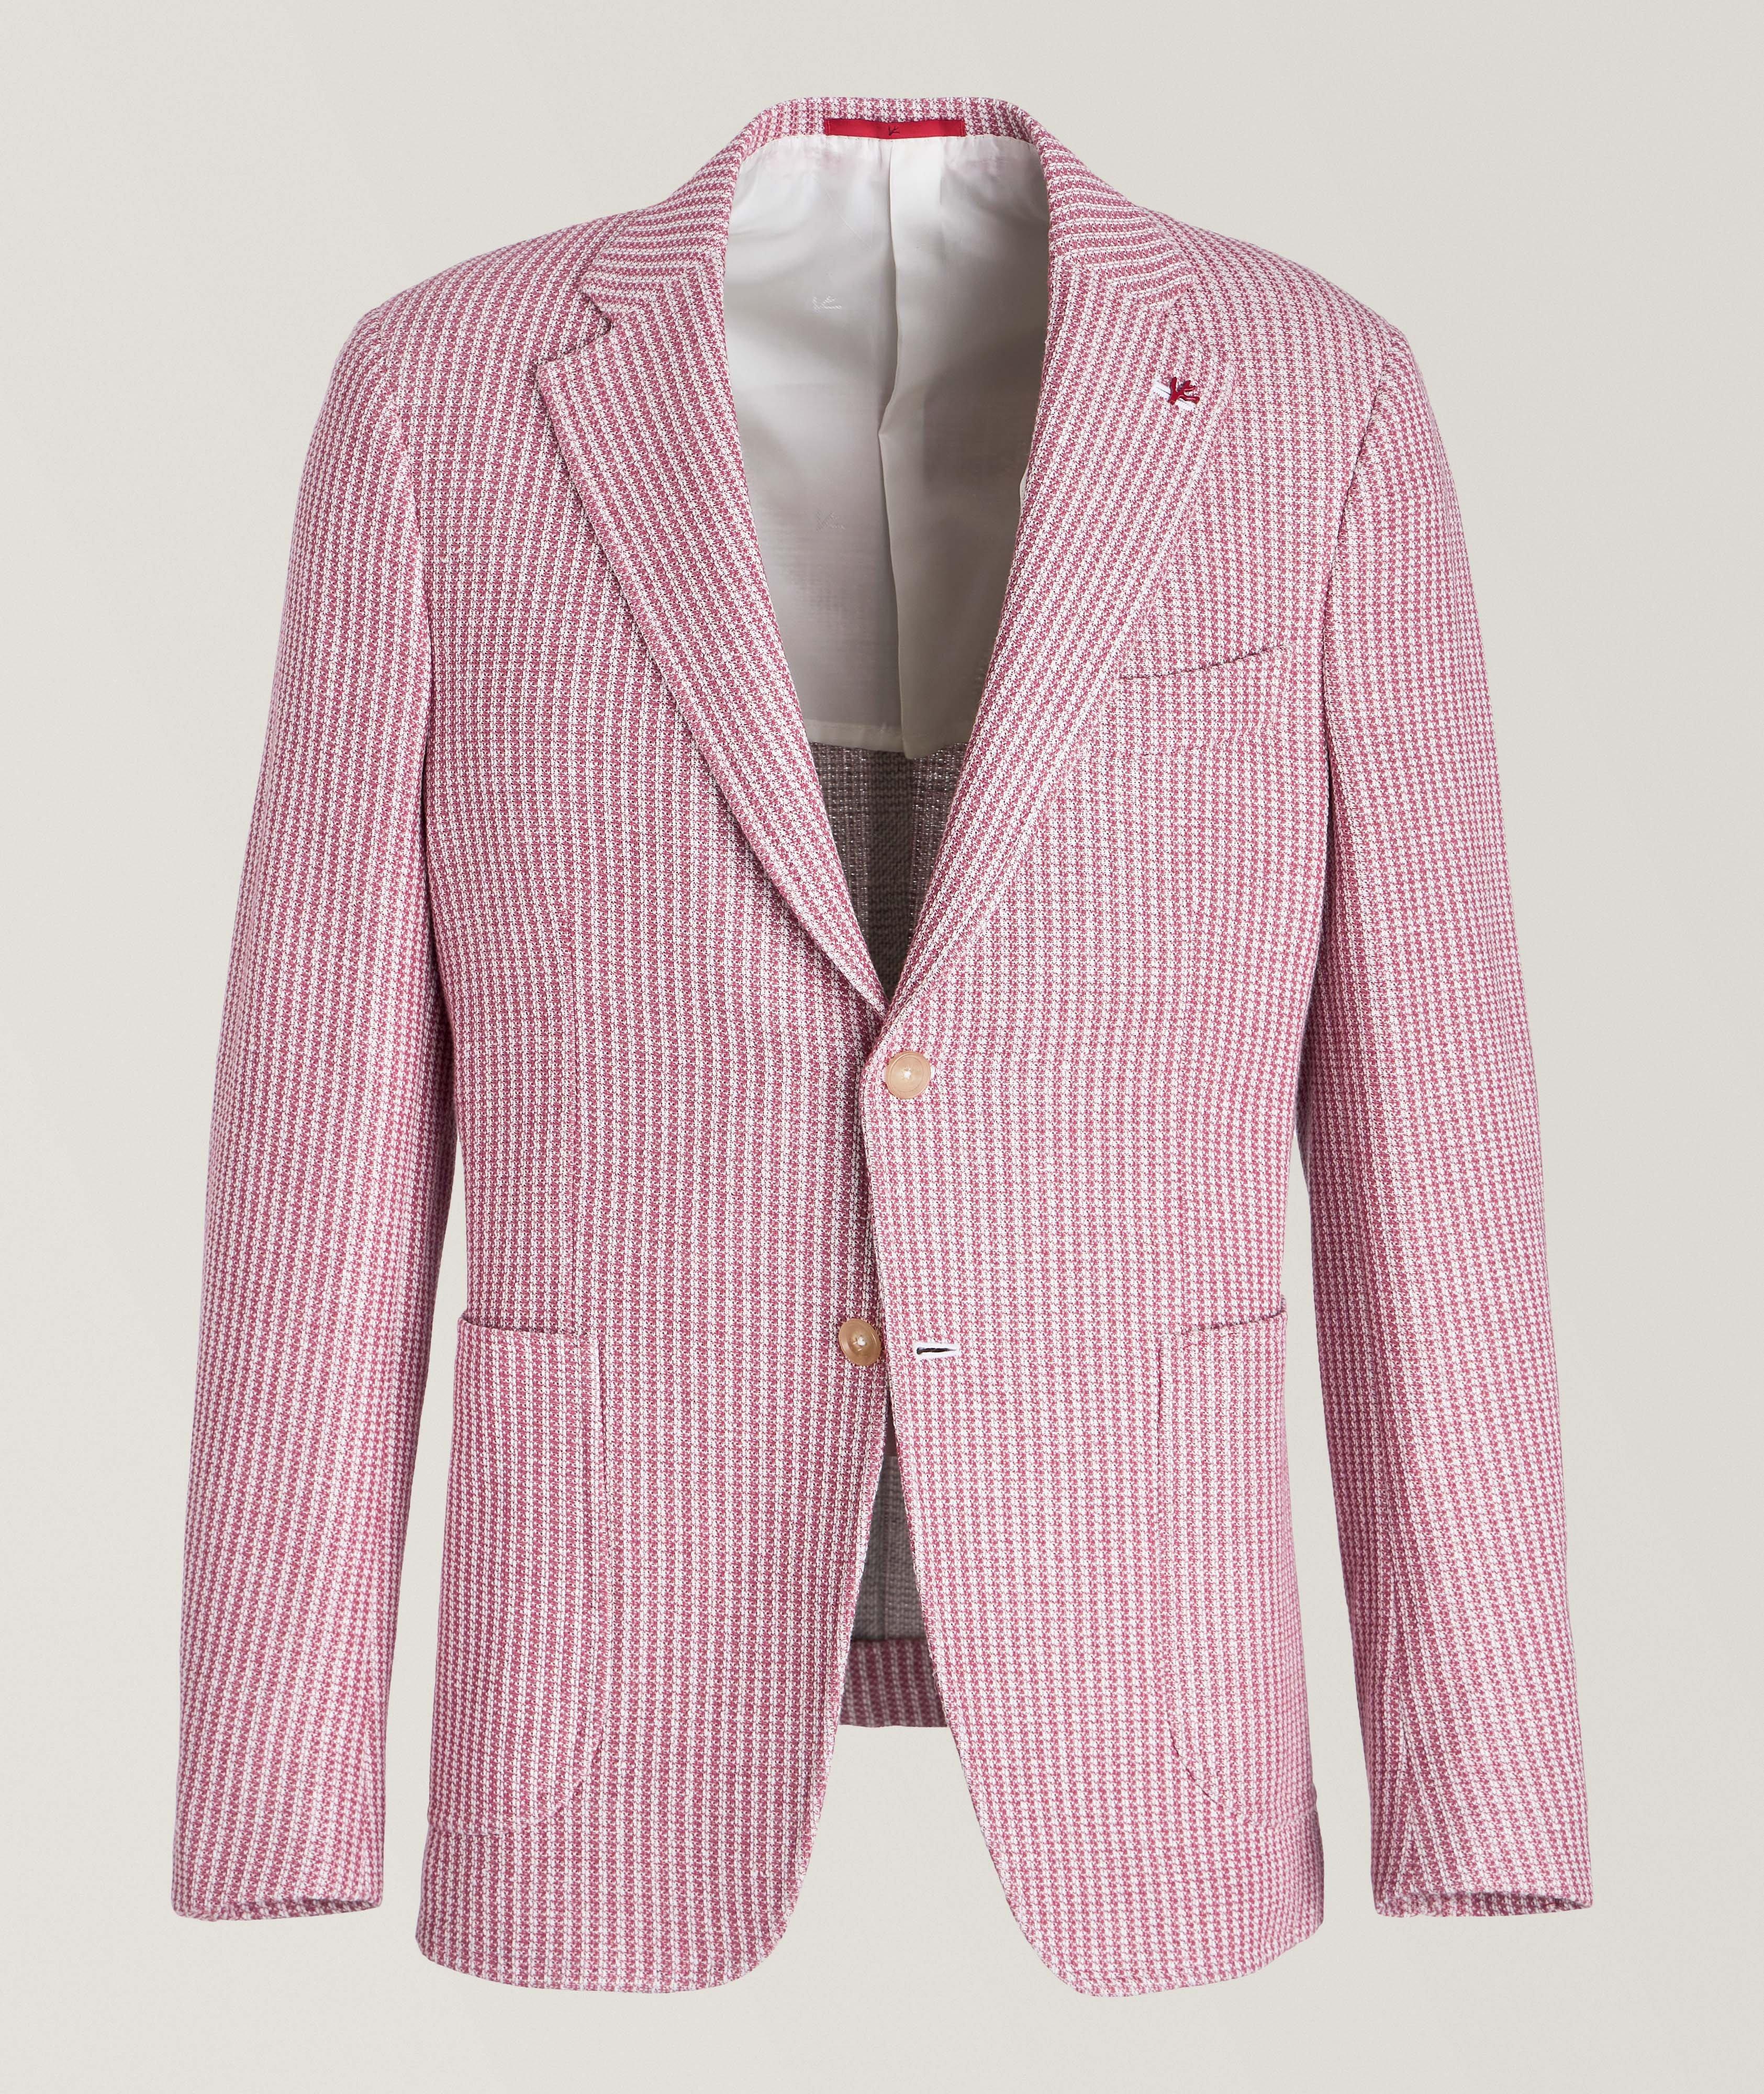 Capri Houndstooth Cotton-Blend Sport Jacket image 0